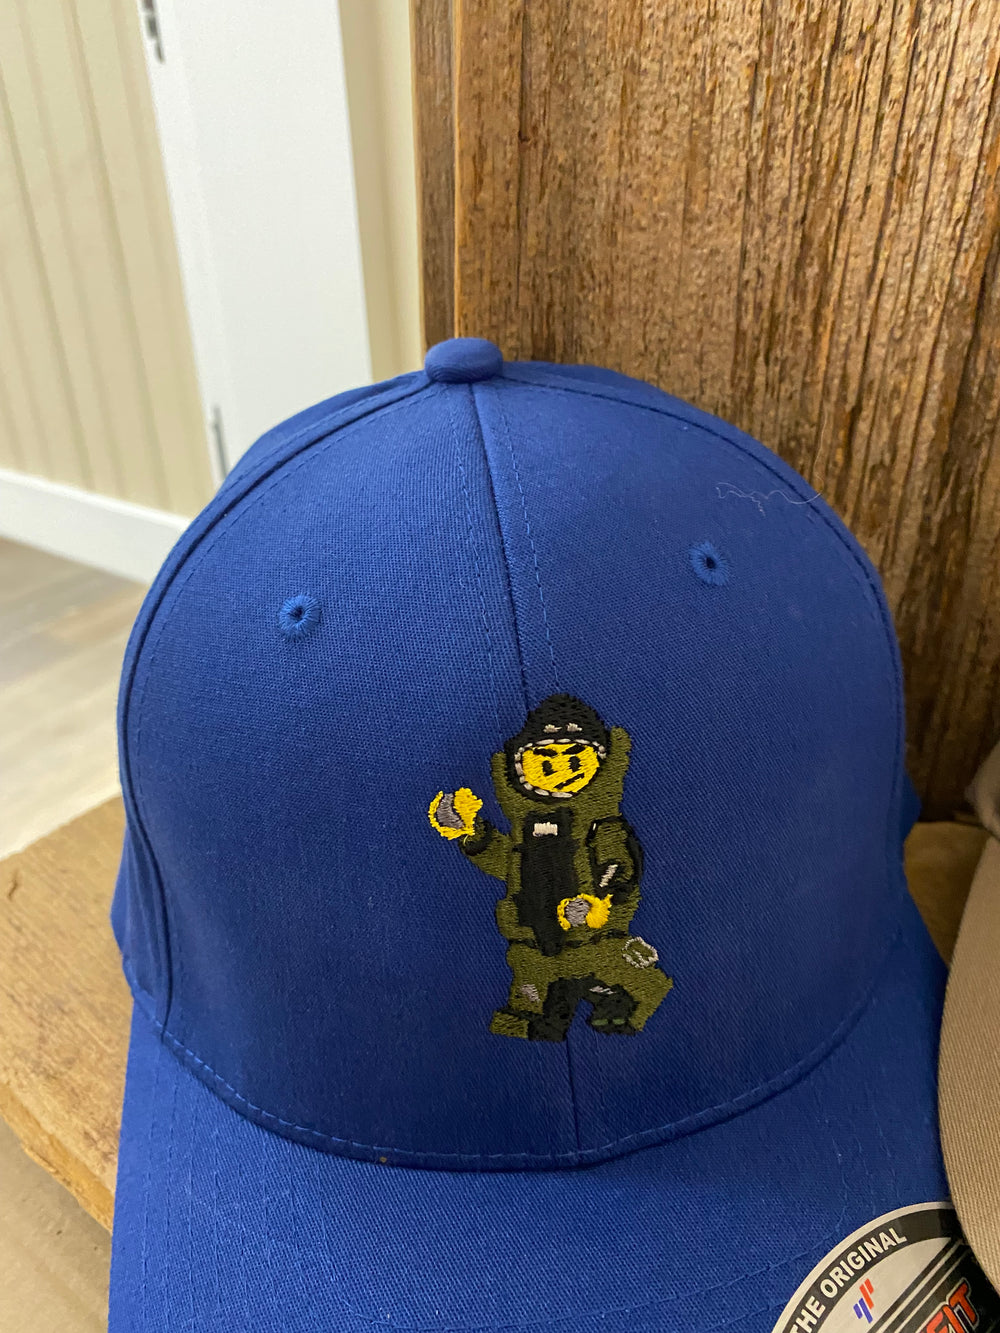 Bomb Suit Guy MiniFigure Hat